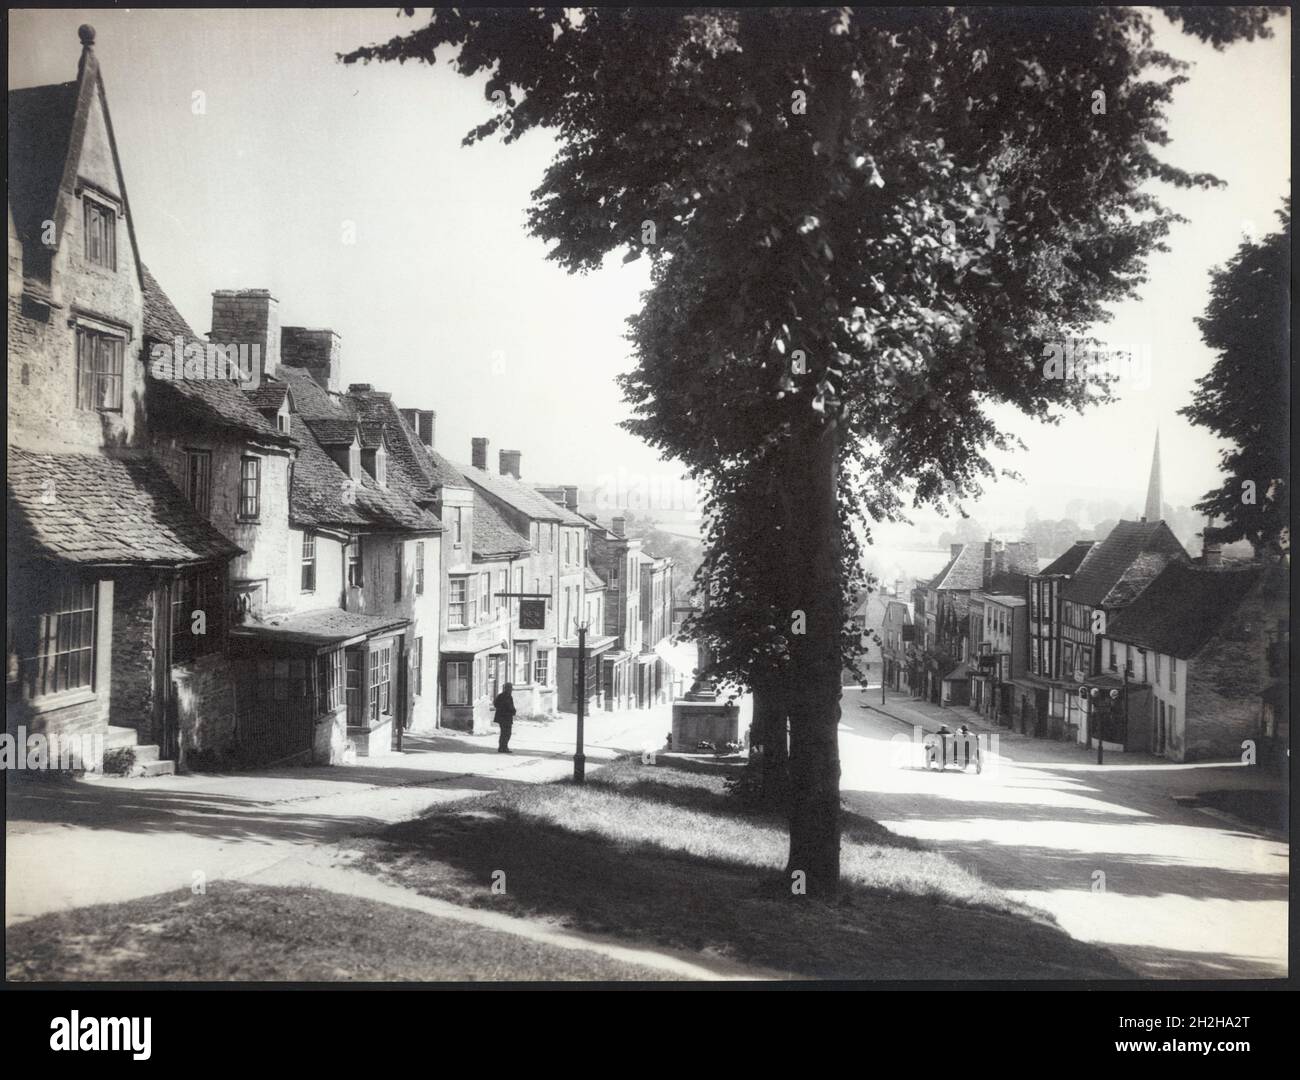 High Street, Burford, West Oxfordshire, Oxfordshire, 1925-1935. Der Blick nach Norden auf die High Street mit dem war Memorial im Vordergrund, das teilweise von Bäumen auf der Westseite der Fahrbahn verdeckt wird. Stockfoto